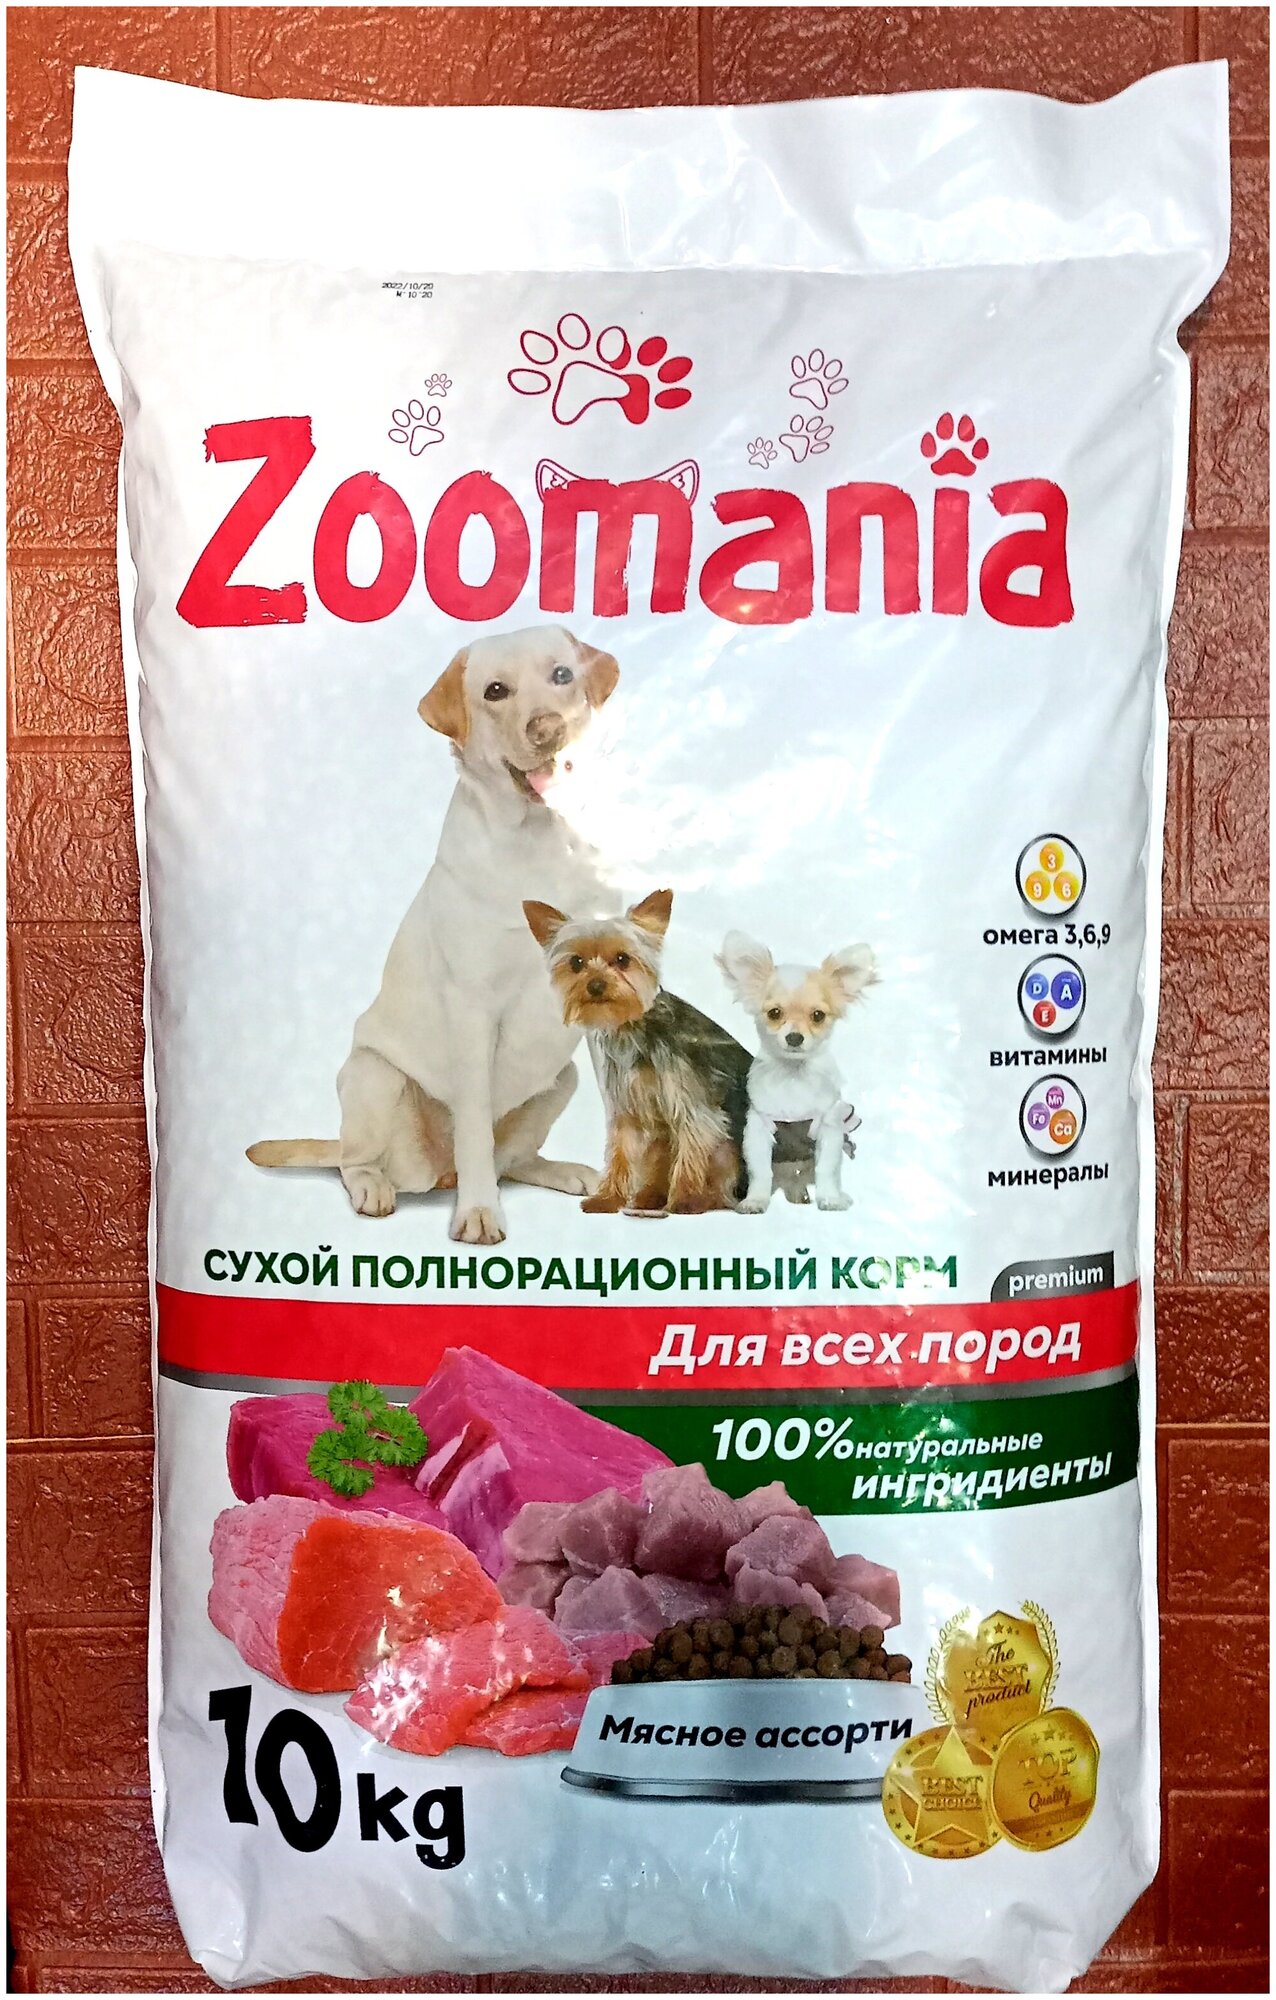 Сухой полнорационный корм для собак ZooMania premium Мясное ассорти, для всех пород, 10 кг